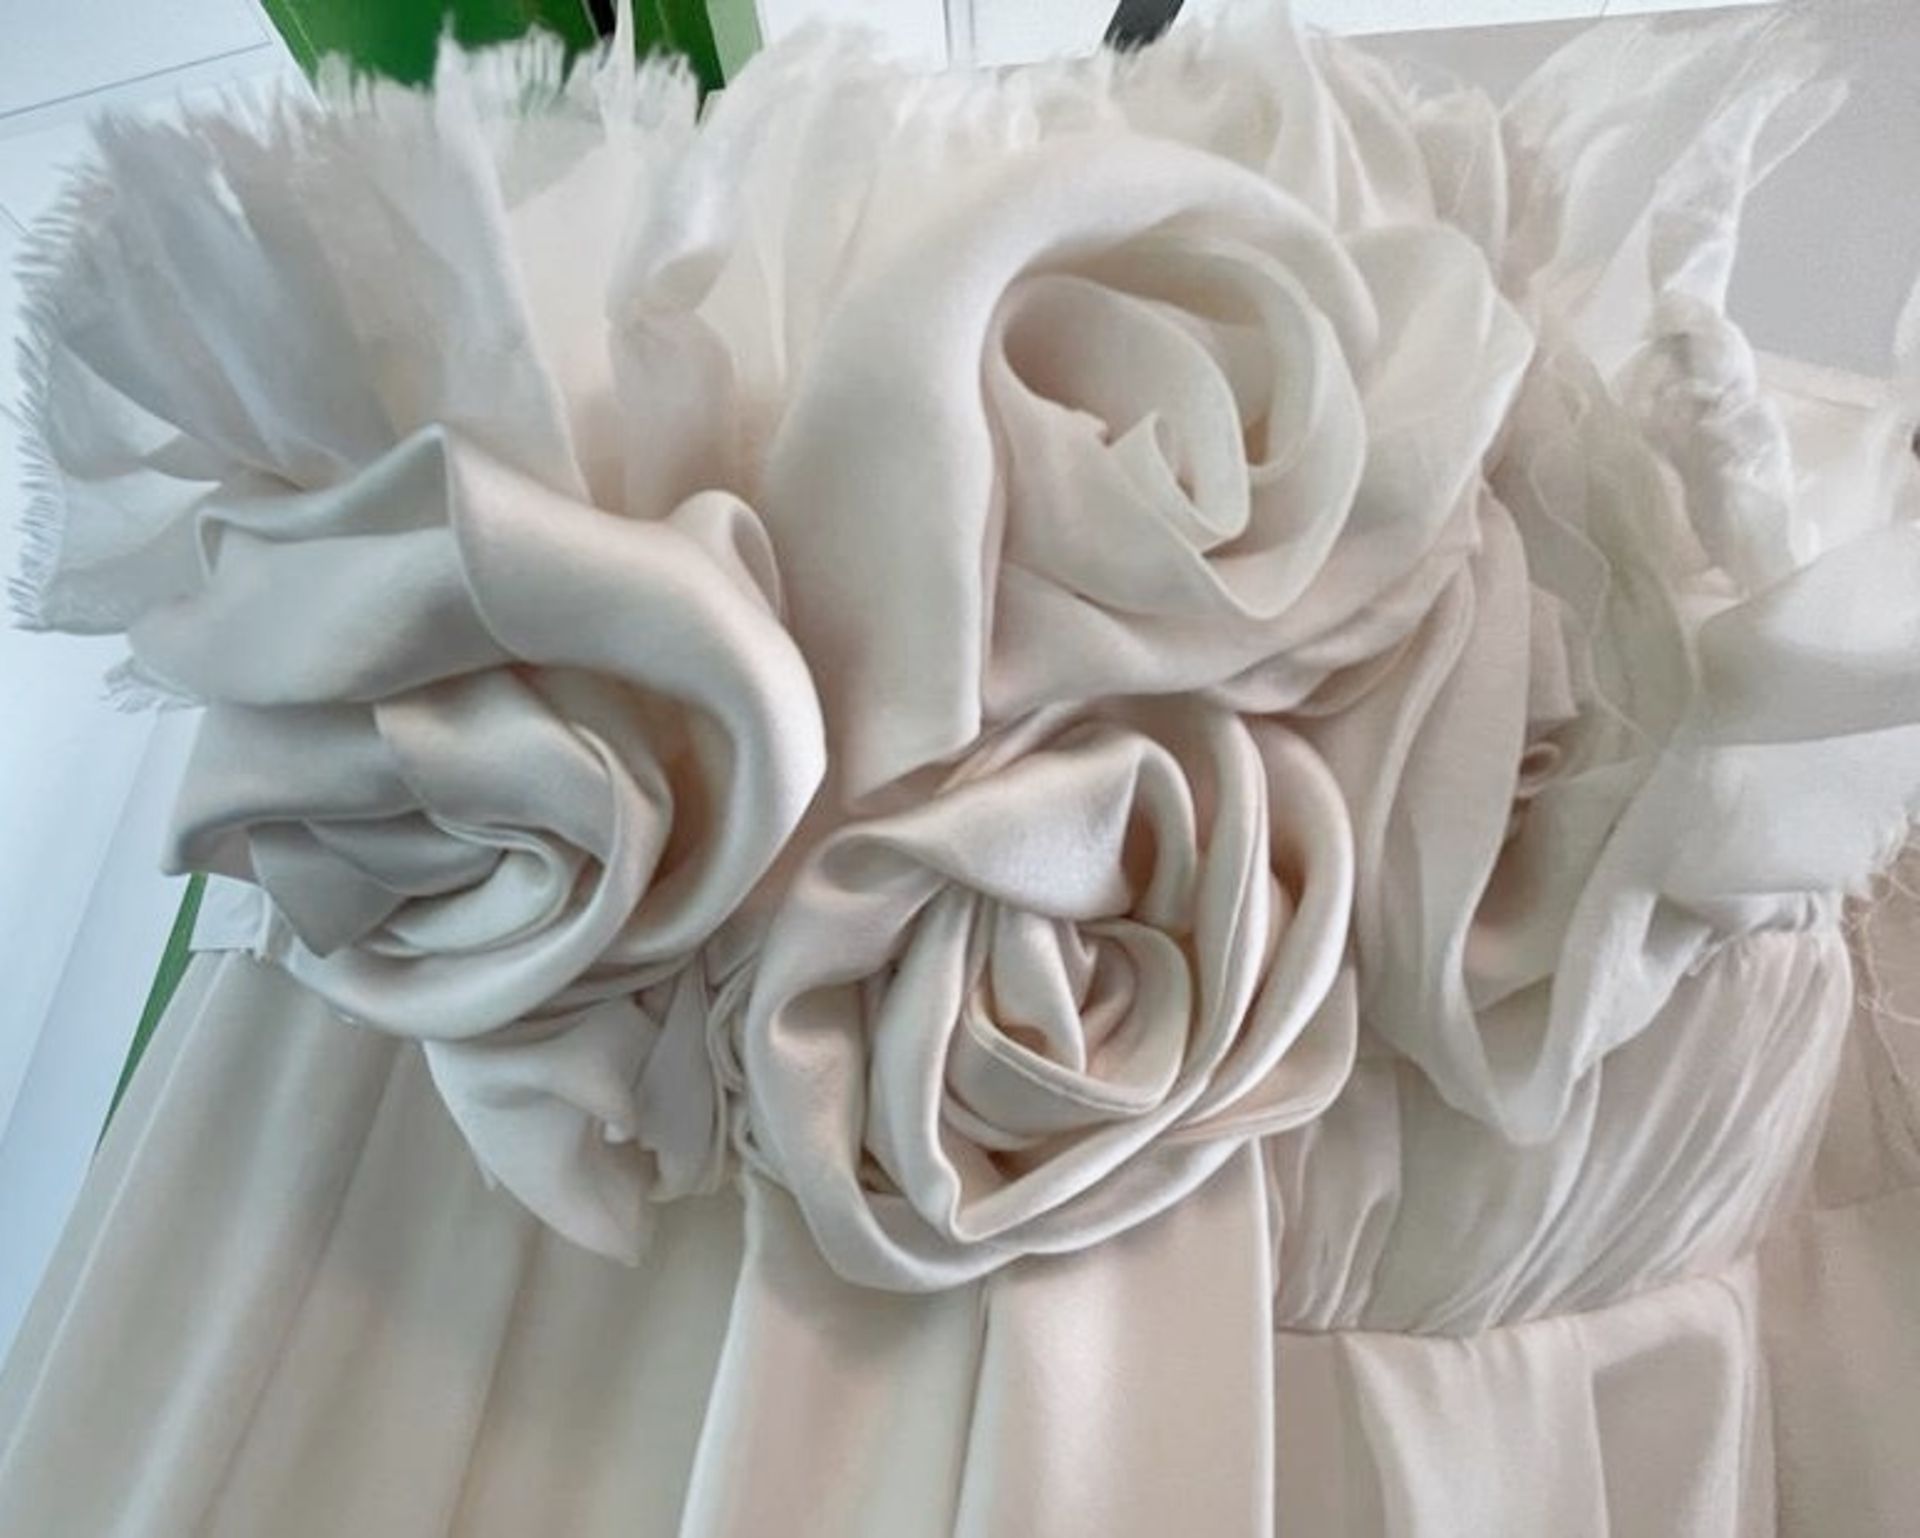 1 x DAVID FIELDEN Designer Silk Strapless Grecian-style Column Wedding Dress Bridal Gown, With - Image 2 of 8